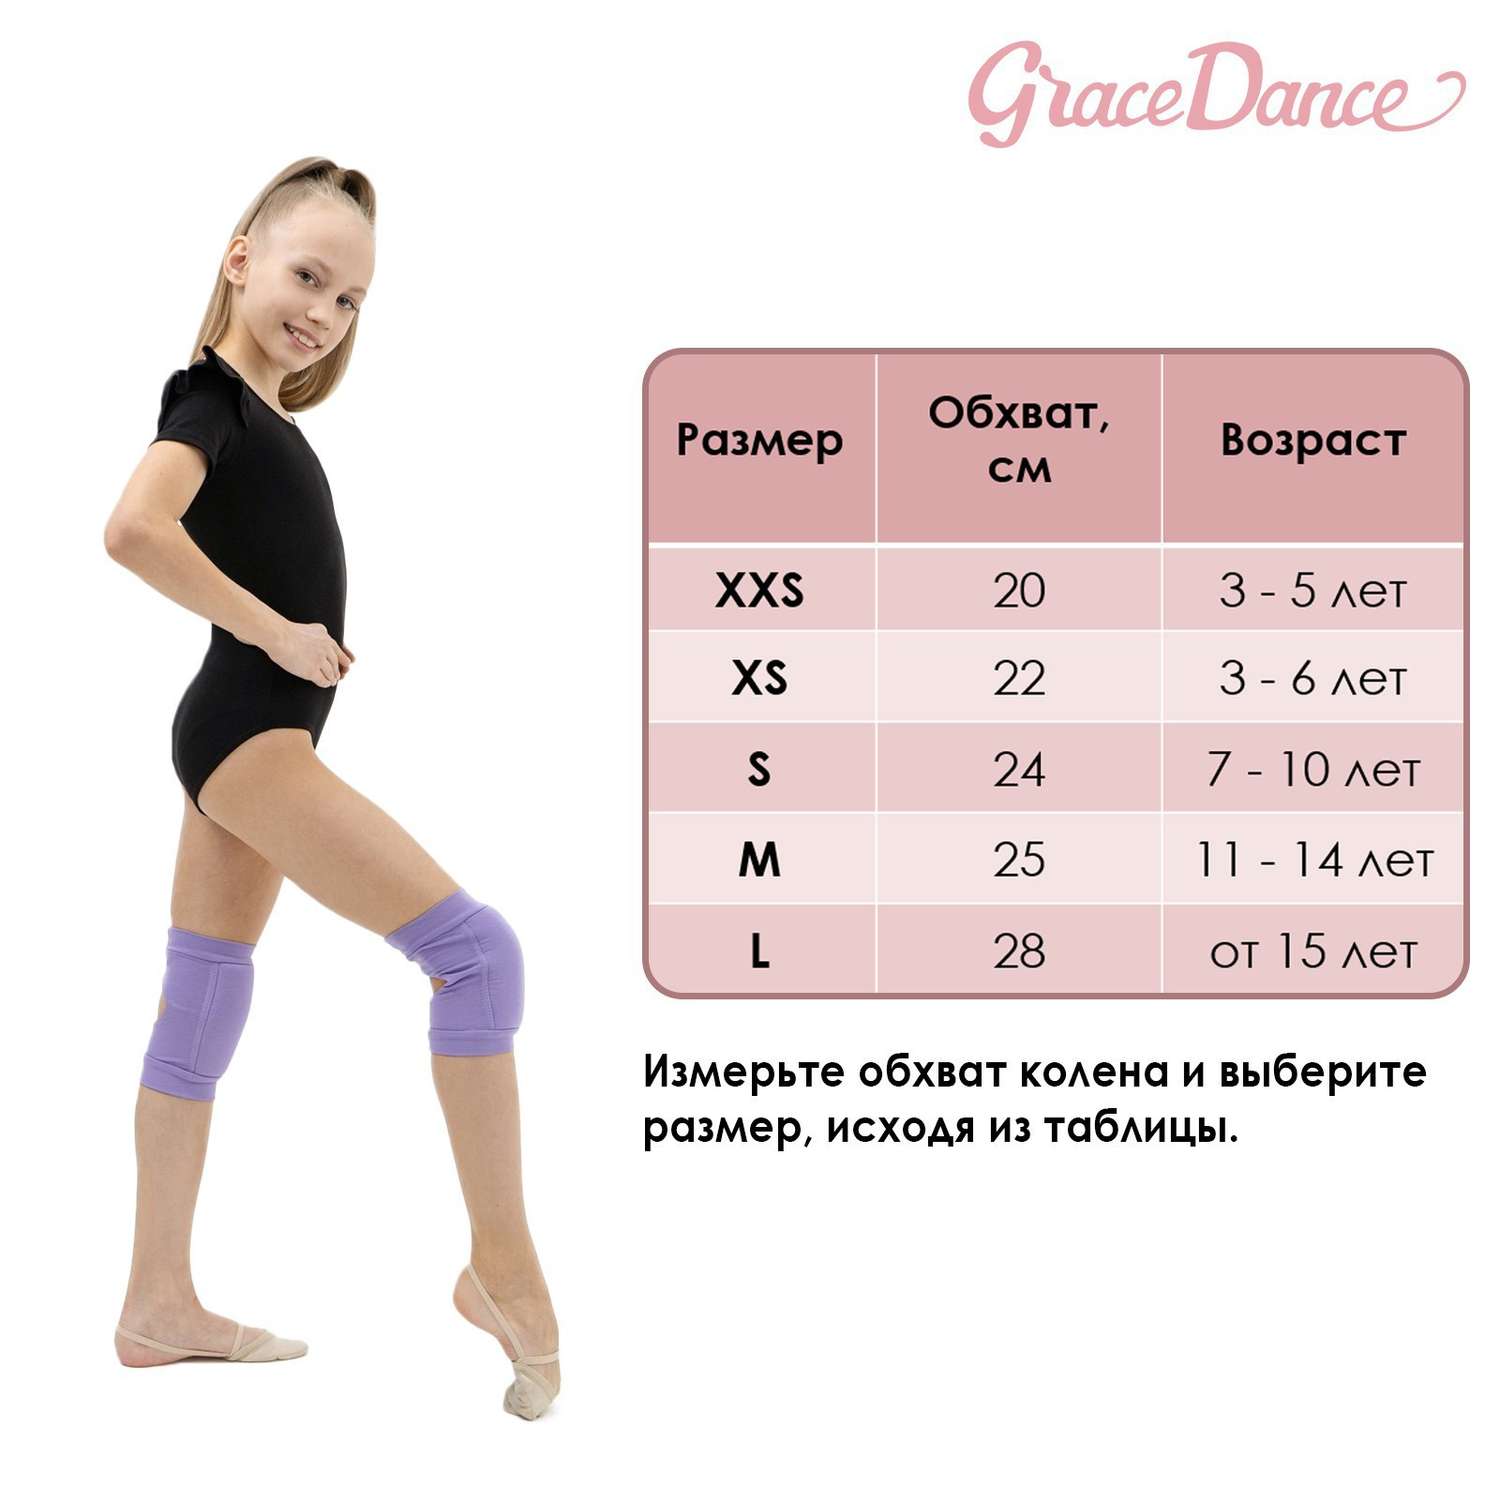 Наколенники Grace Dance для гимнастики и танцев с уплотнителем. размер S 7-10 лет. цвет чёрный - фото 10